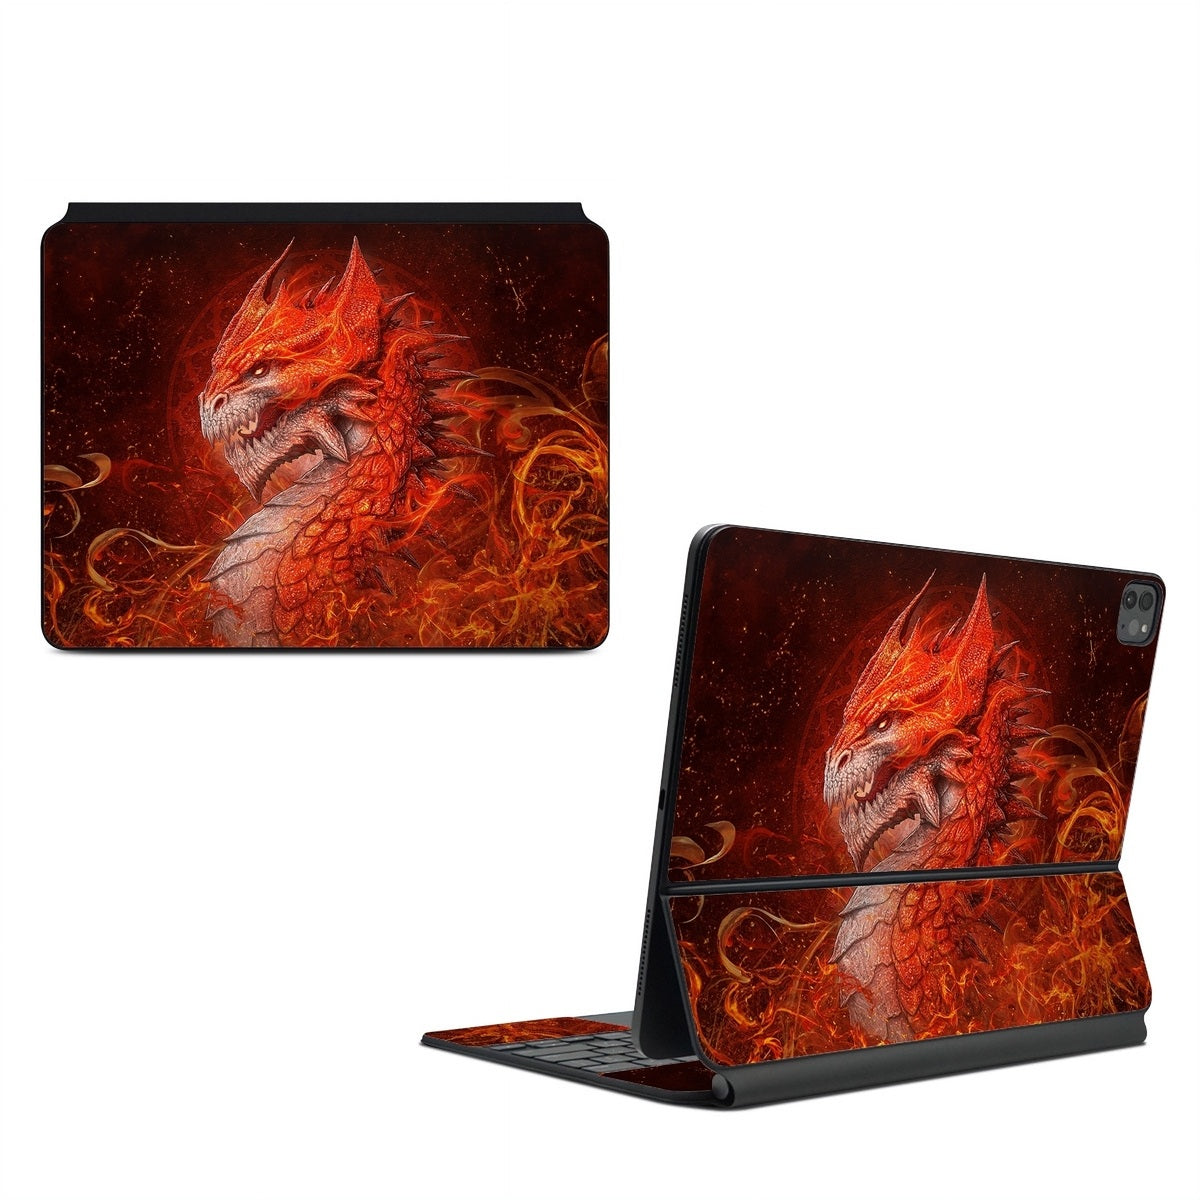 Flame Dragon - Apple Magic Keyboard for iPad Skin